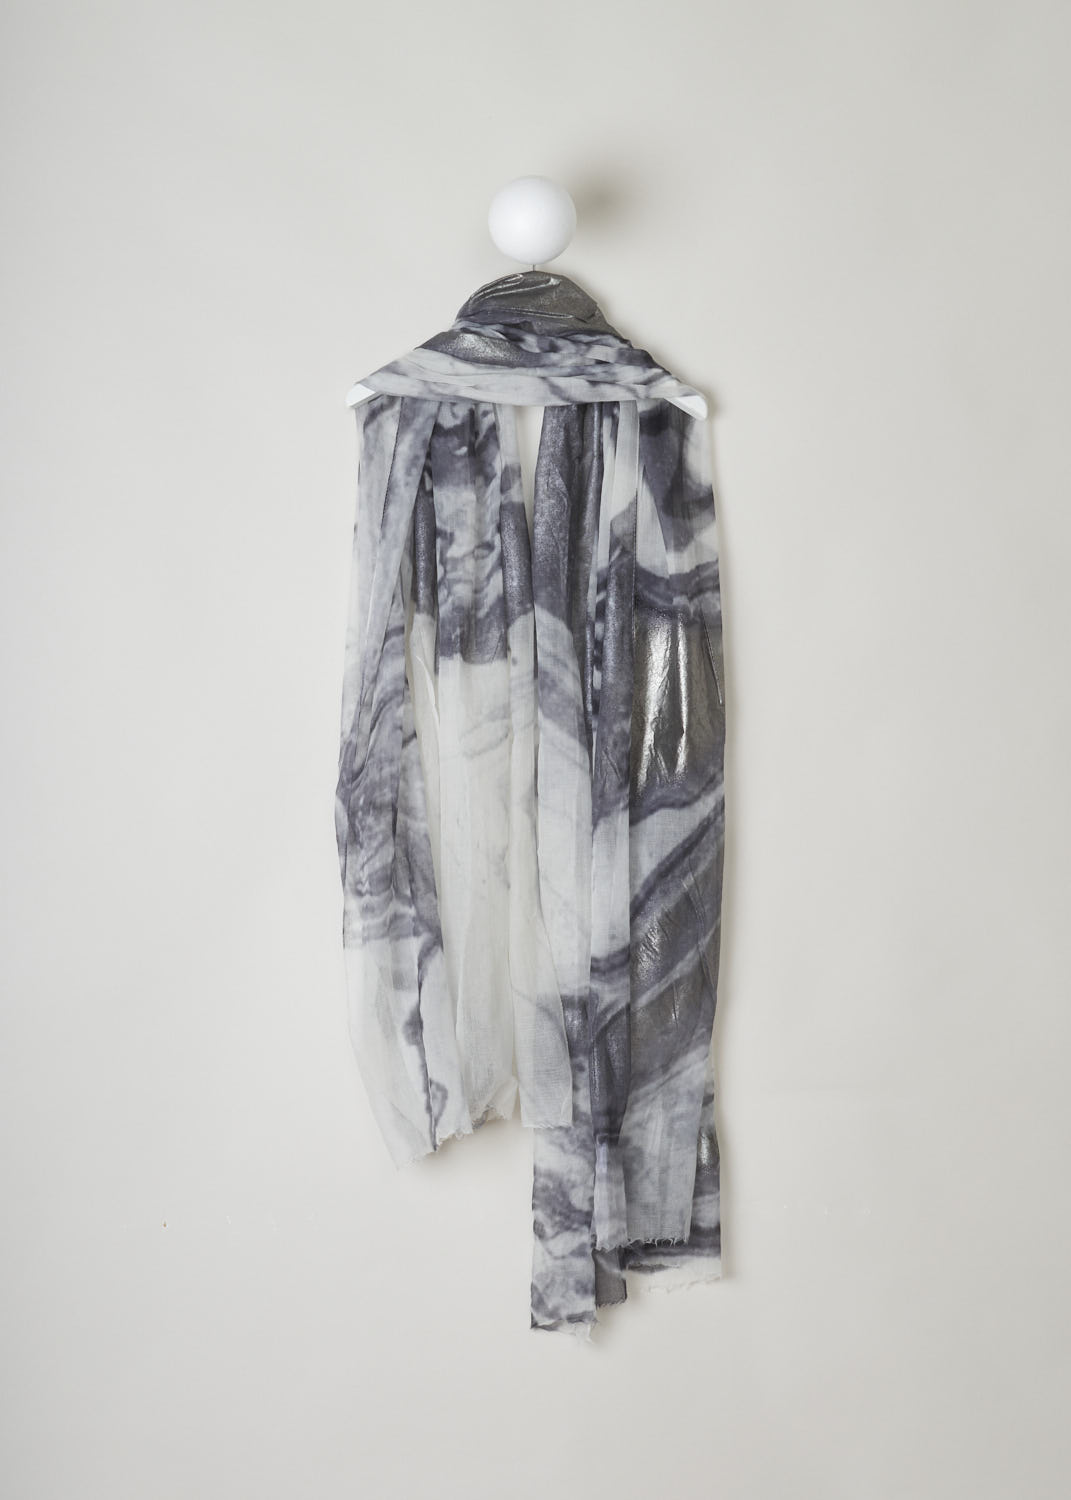 BRUNELLO CUCINELLI, SHAWL IN GREY WITH METALLIC DETAIL, MSCDAG055_CV477, Grey, Back, Beautiful scarf in grey tones with metallic details. The scarf has a raw hem. 
